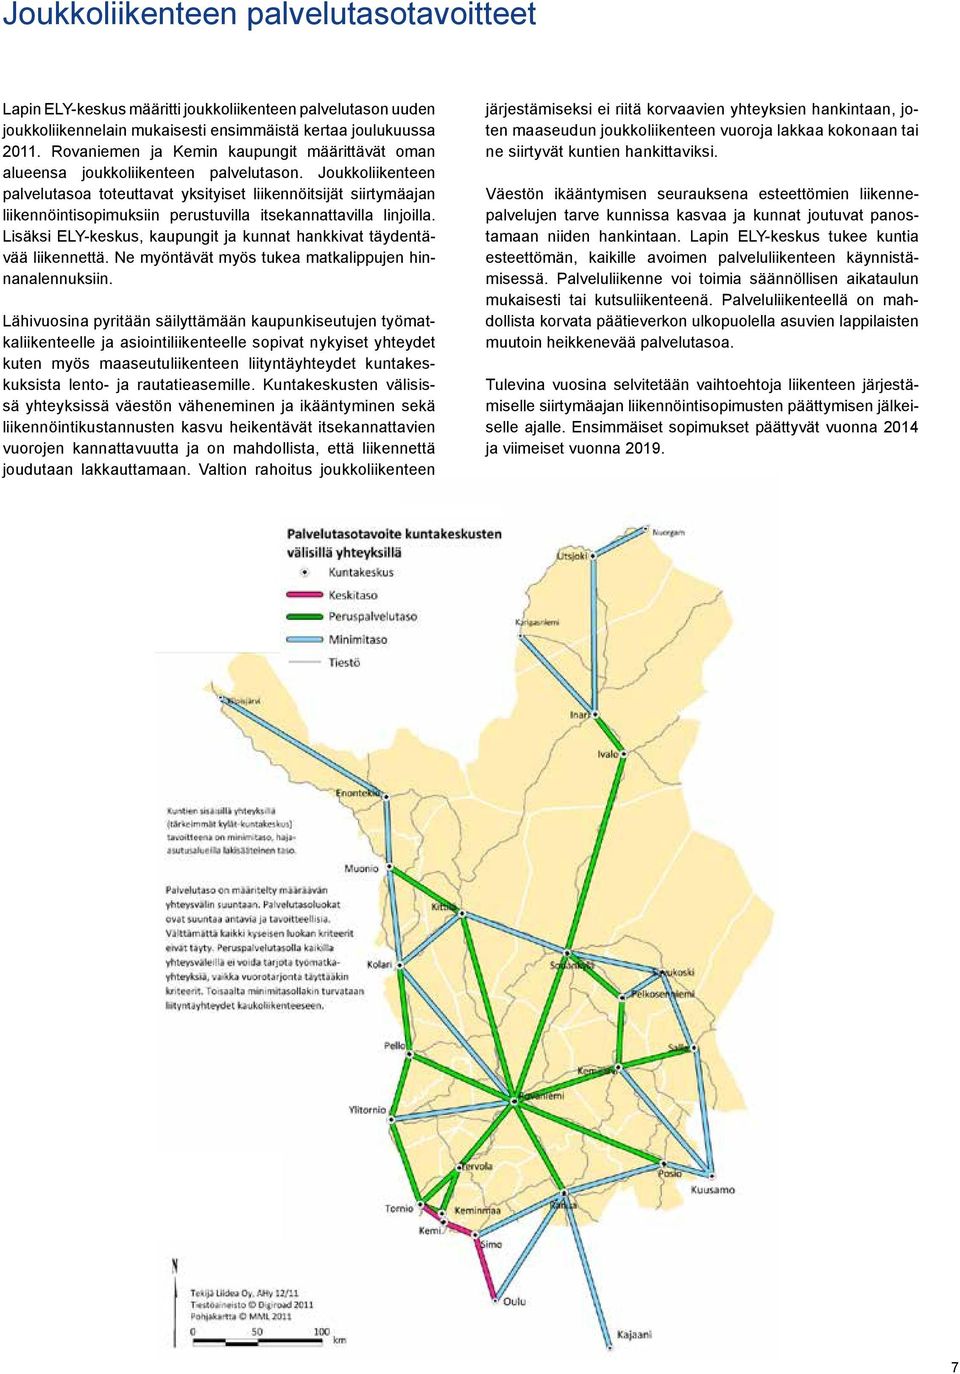 Joukkoliikenteen pal ve lutasoa toteuttavat yksityiset liikennöitsijät siirtymäajan liikennöintisopimuksiin perustuvilla itsekannattavilla linjoilla.